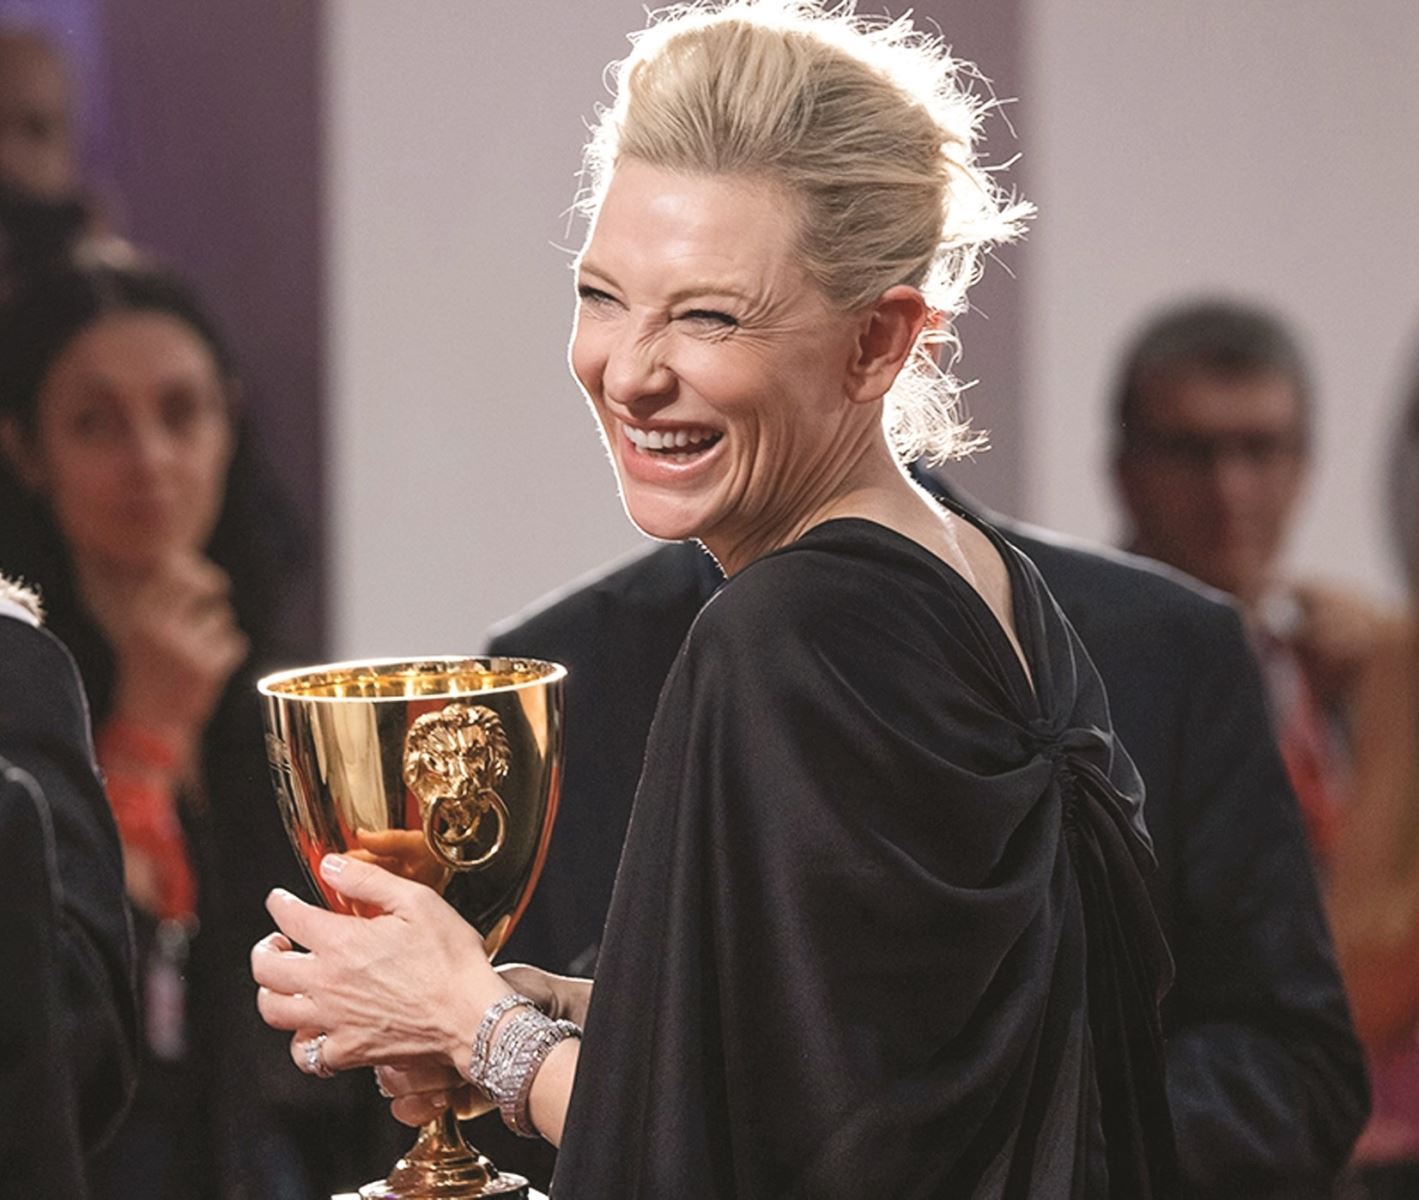 Được biết đến qua loạt bom tấn của Hollywood, Cate Blanchett không chỉ tỏa sáng bởi nhan sắc mà còn chinh phục khán giả qua hàng loạt giải thưởng tại những Liên hoan Phim danh giá.

